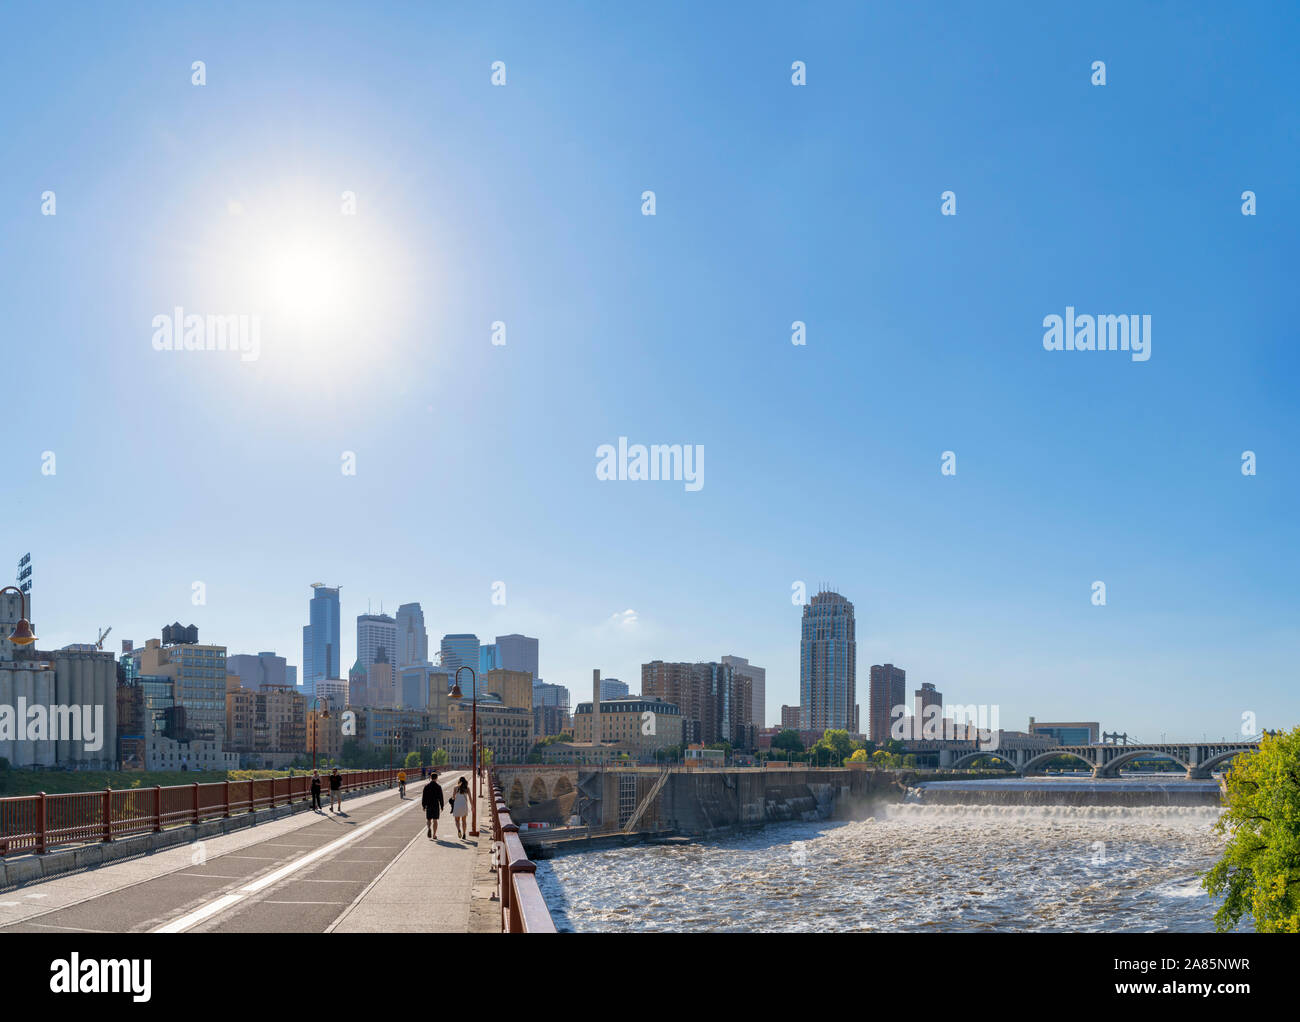 Minneapolis, MN. Lo skyline del centro cittadino dall'arco in pietra con Bridge St Anthony Falls a destra del fiume Mississippi, Minneapolis, Minnesota, Stati Uniti d'America Foto Stock